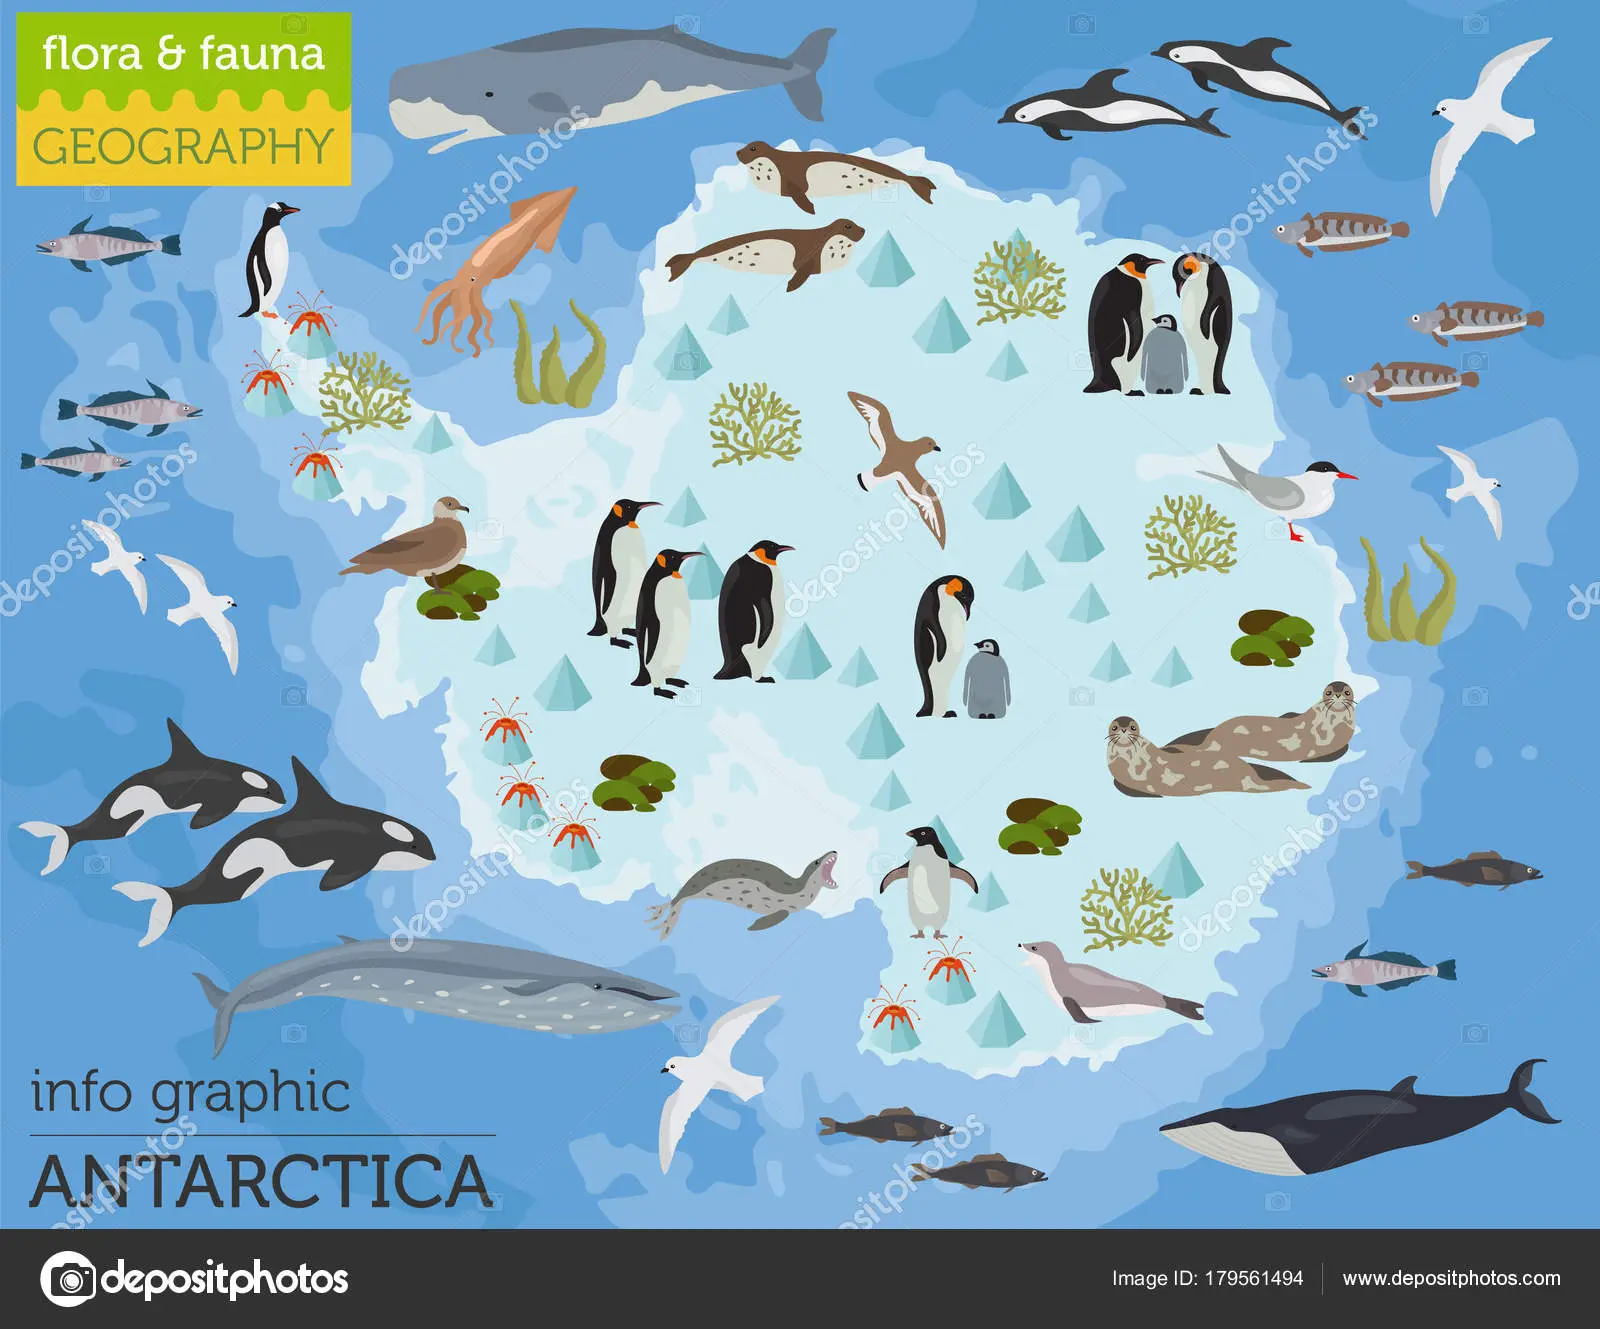 flora y fauna de antártida - Qué animales marinos hay en la Antártida